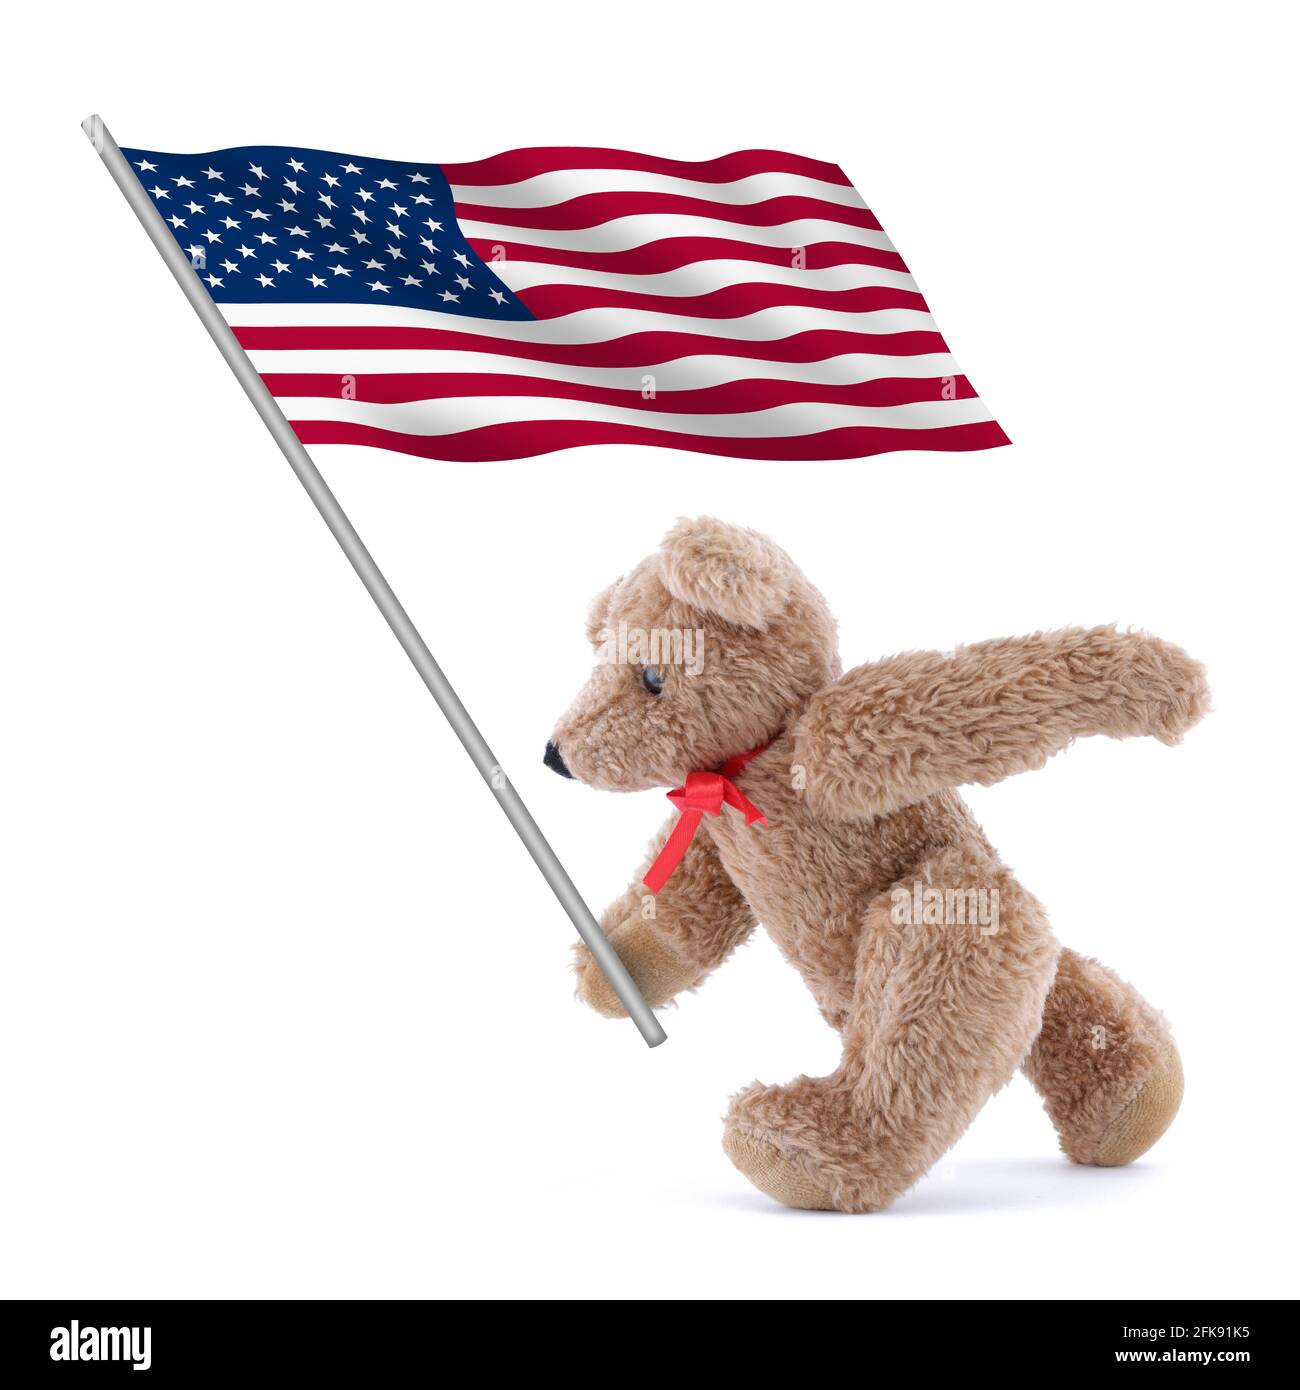 stati Uniti d'America bandiera stelle e strisce vecchia gloria essere trasportato da un orso teddy carino Foto Stock